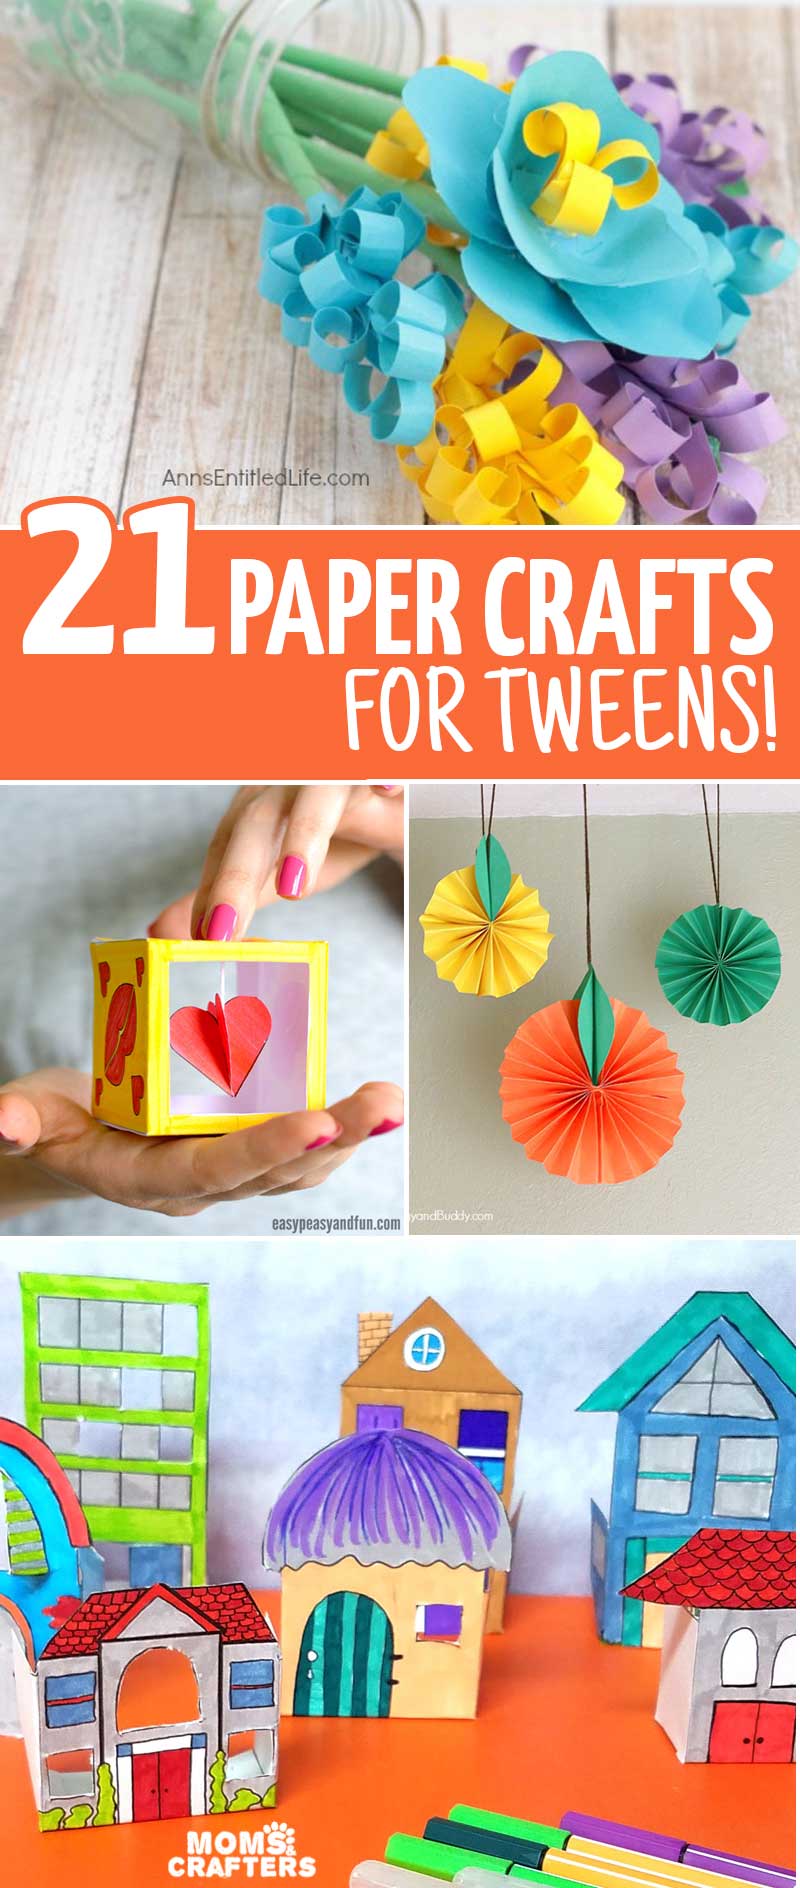 Crafts for Tweens & Teens